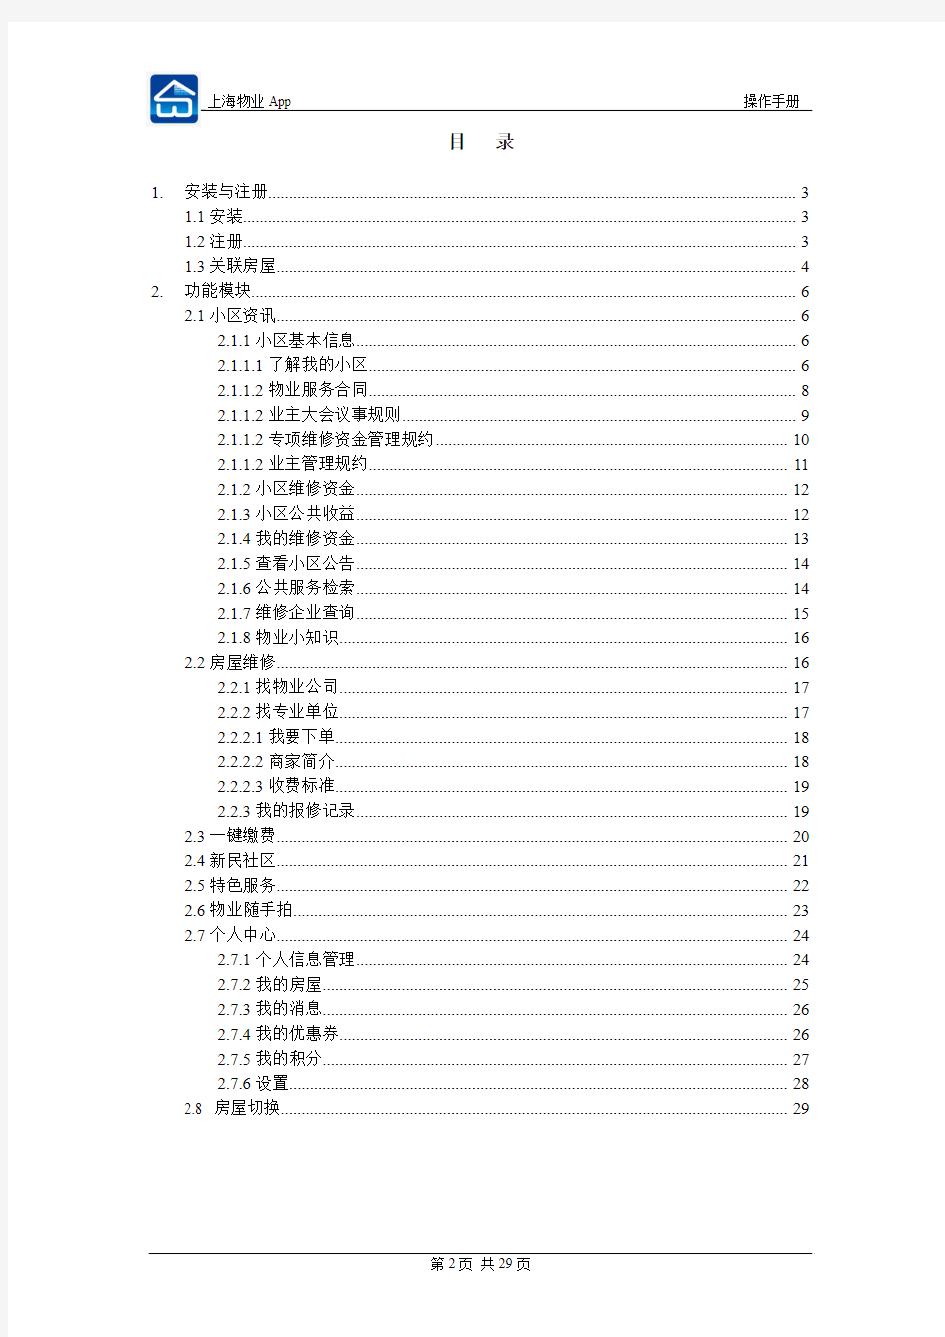 上海物业App操作手册(业主)